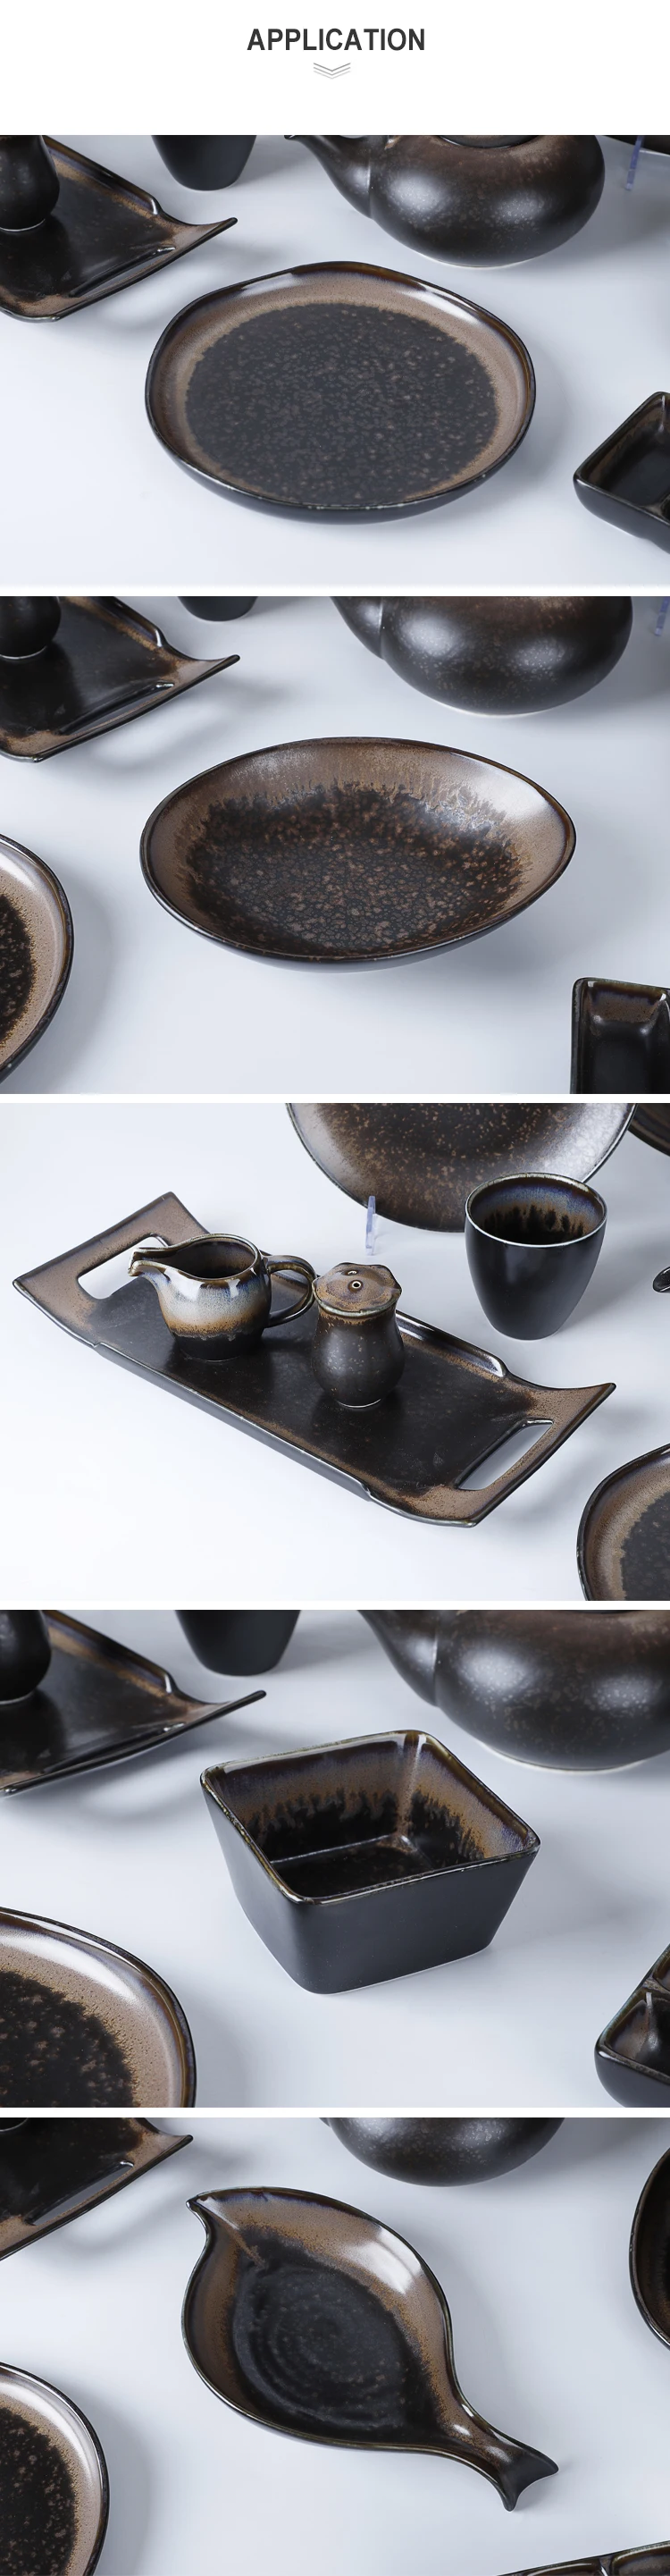 Japanese Style Restaurant Porcelain Dinnerware Black Ceramic Tableware Sushi Plate Set^